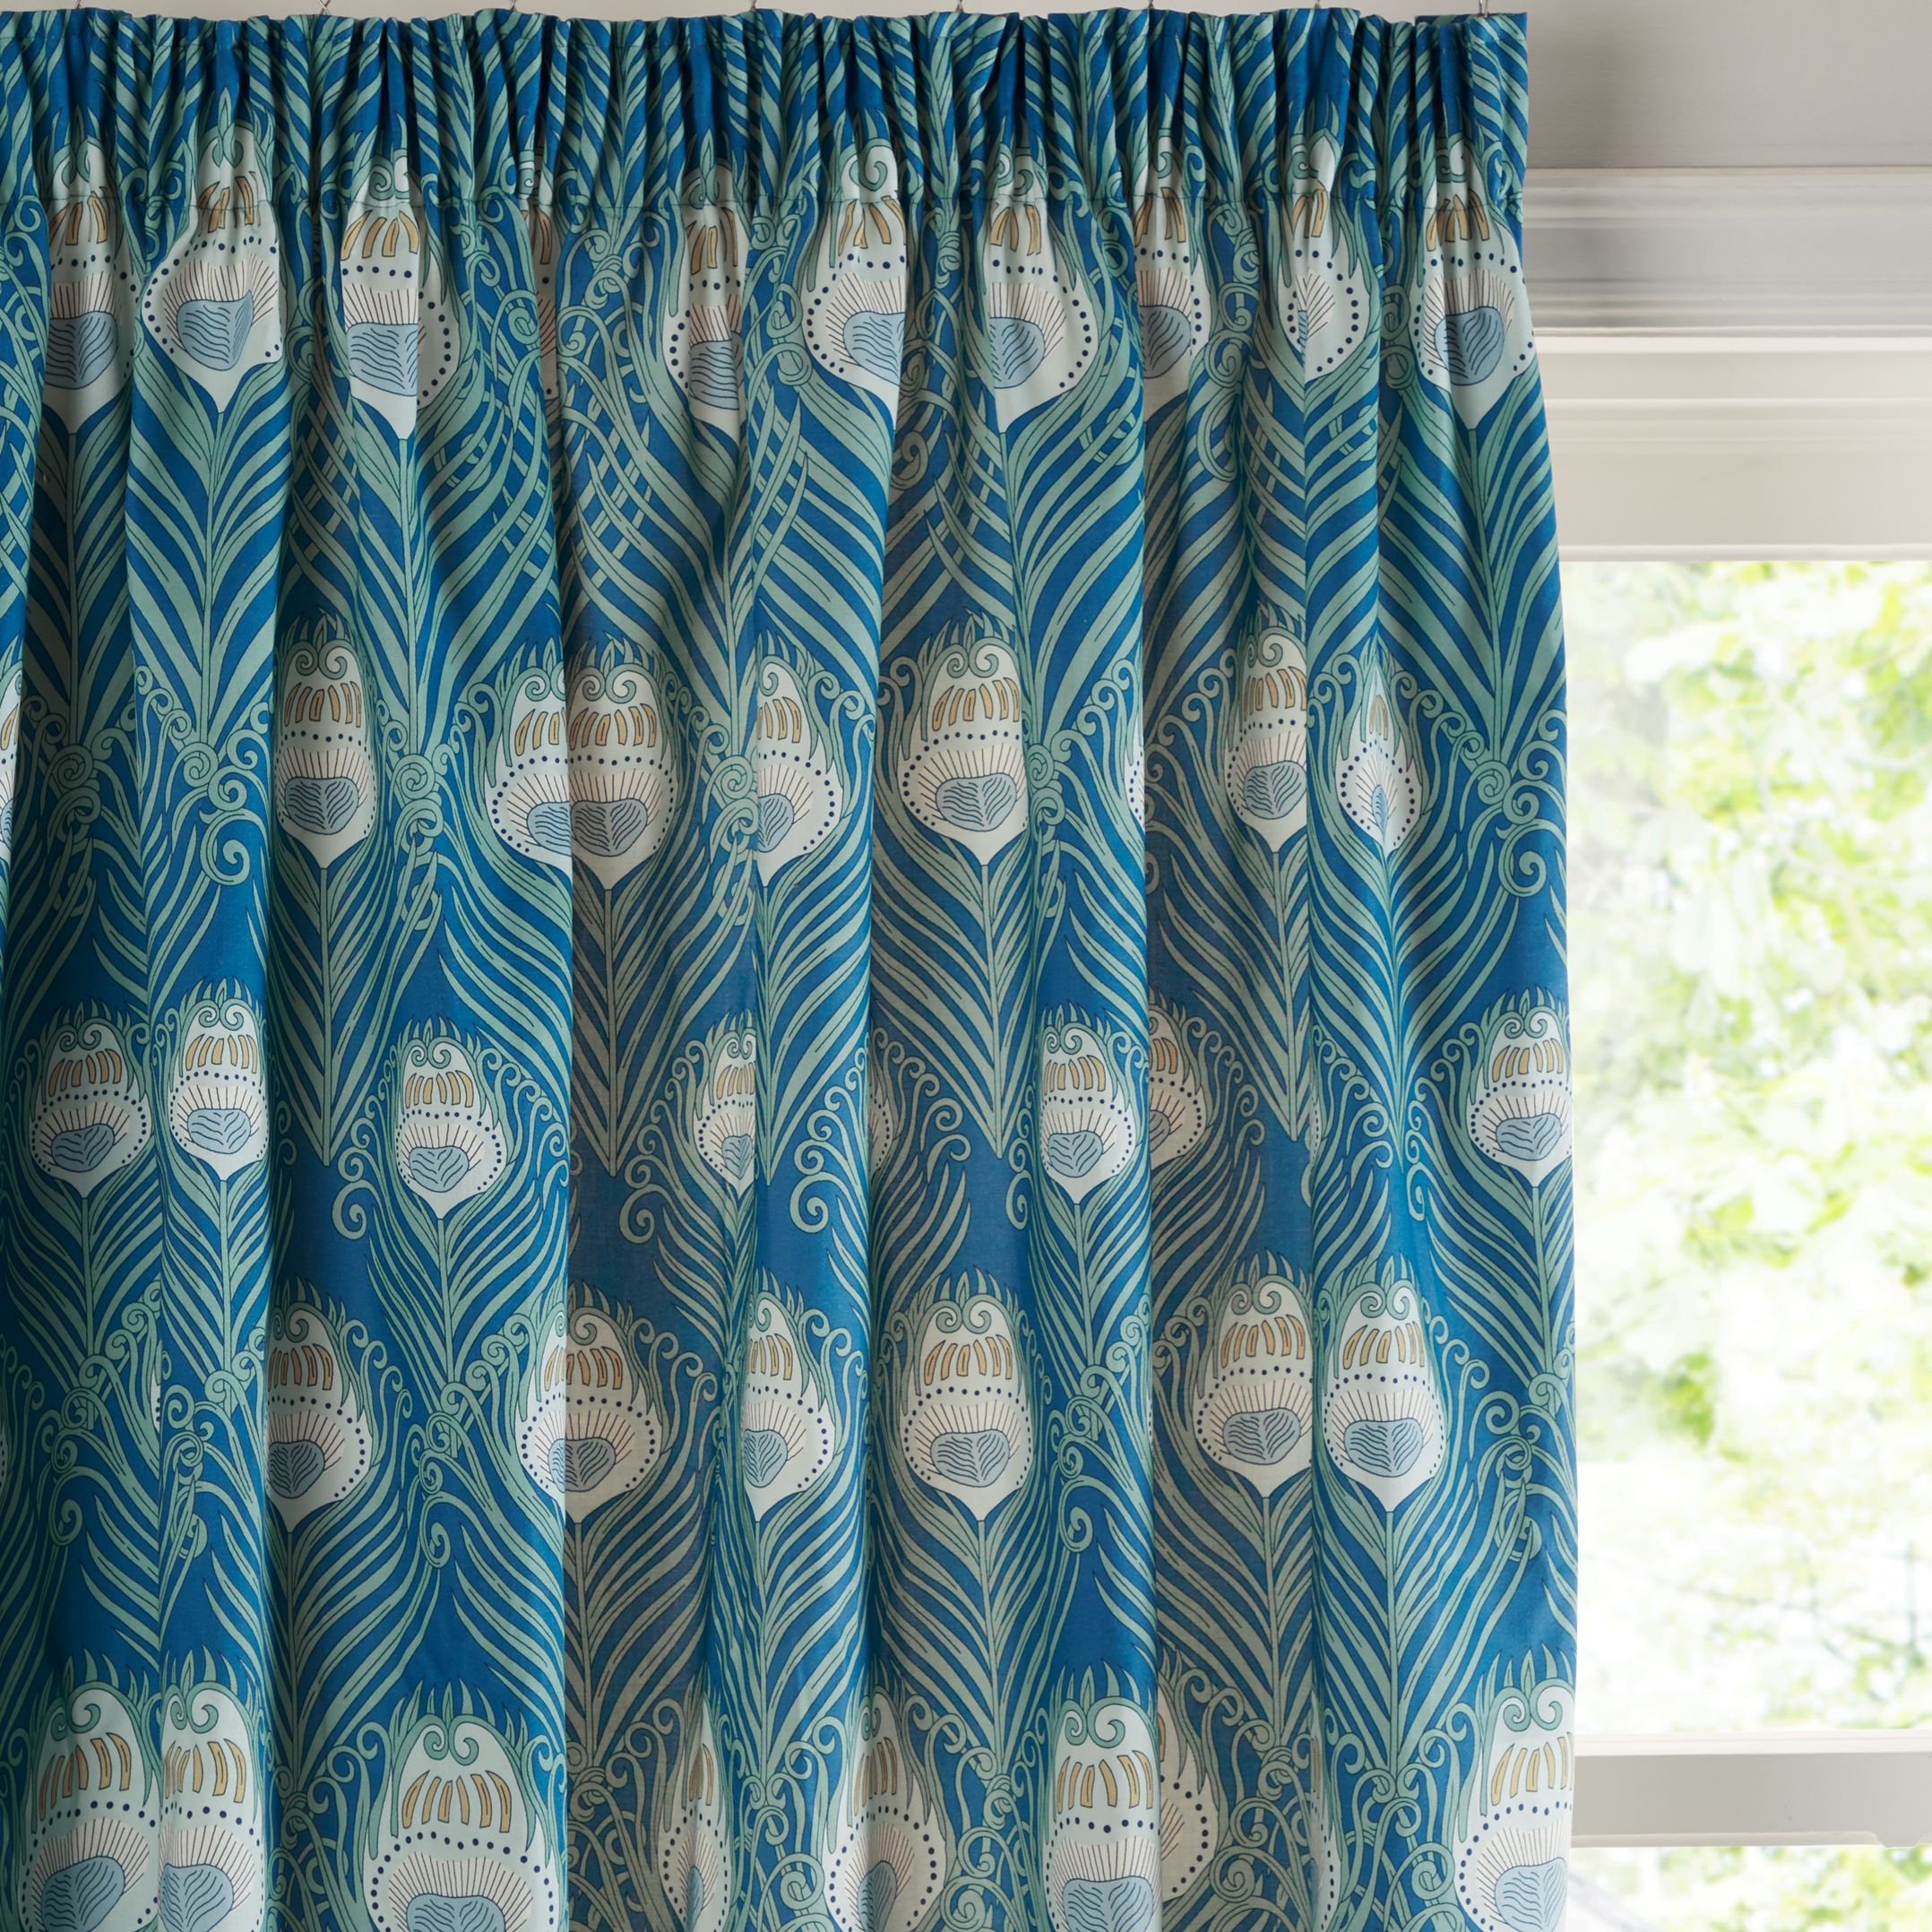 Liberty Fabrics & John Lewis Caesar Pair Lined Pencil Pleat Curtains